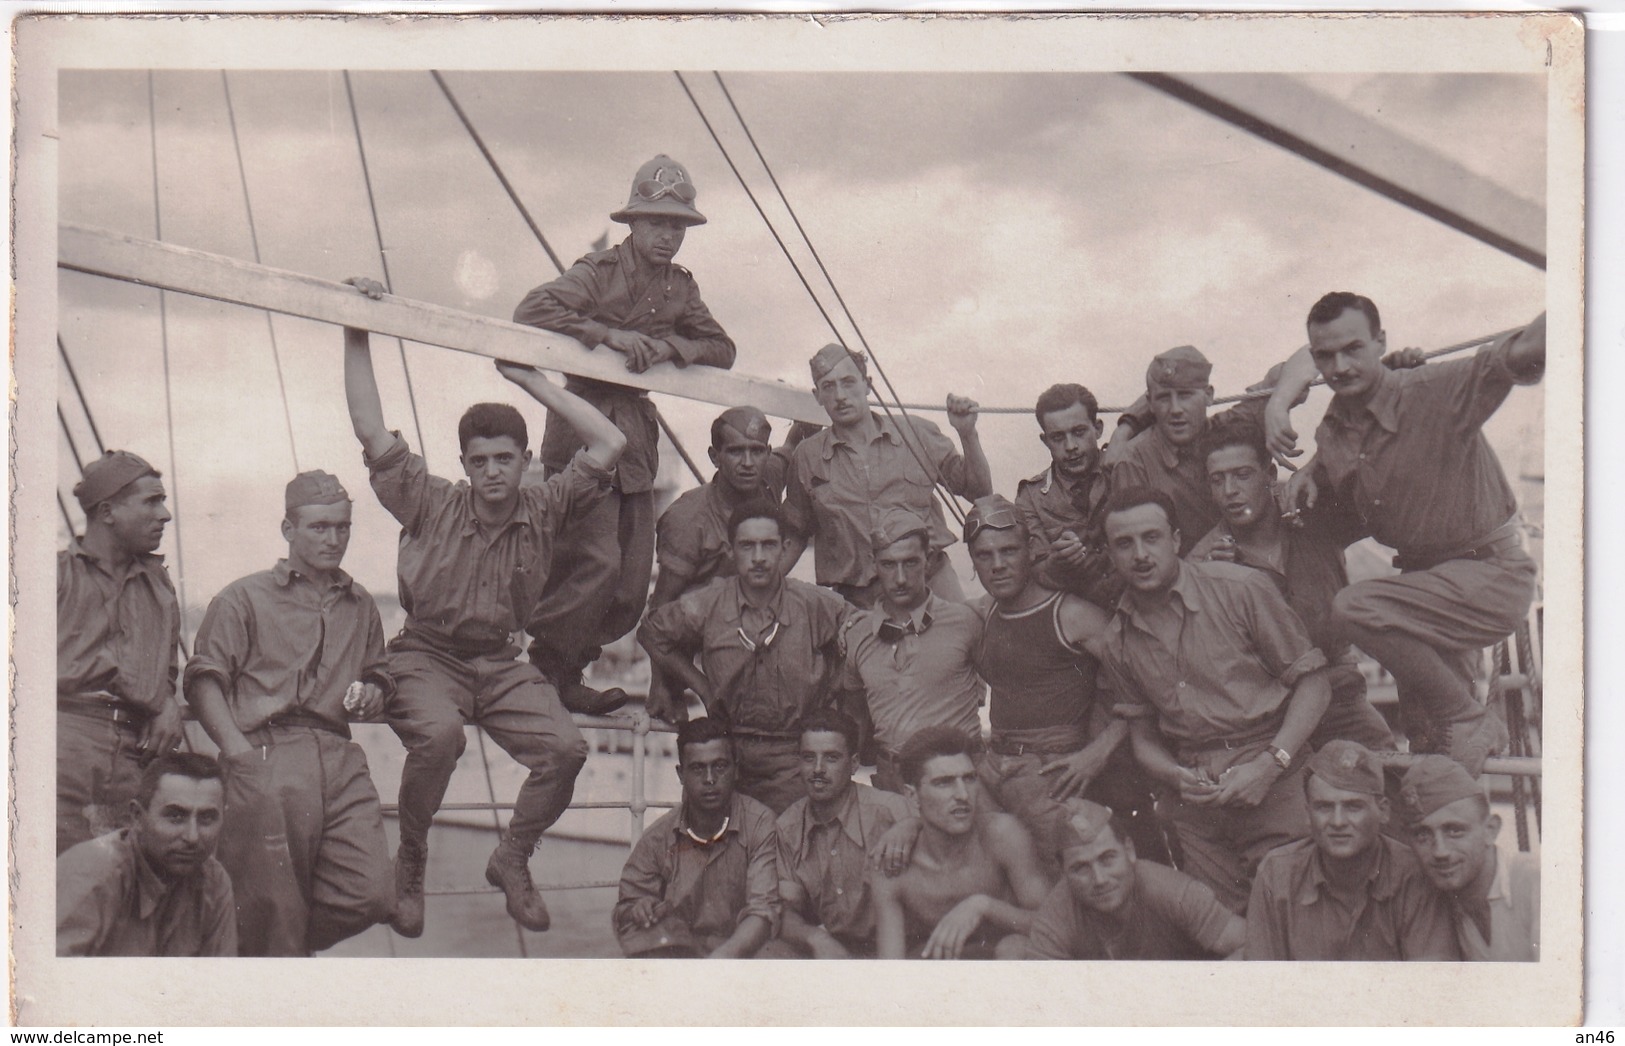 Sulla Nave Per Tripoli-Bella Foto Cartolina Postale-Militari Nella Guerra D'Africa-Integra E Originale Al 100%an2 - Fotografia